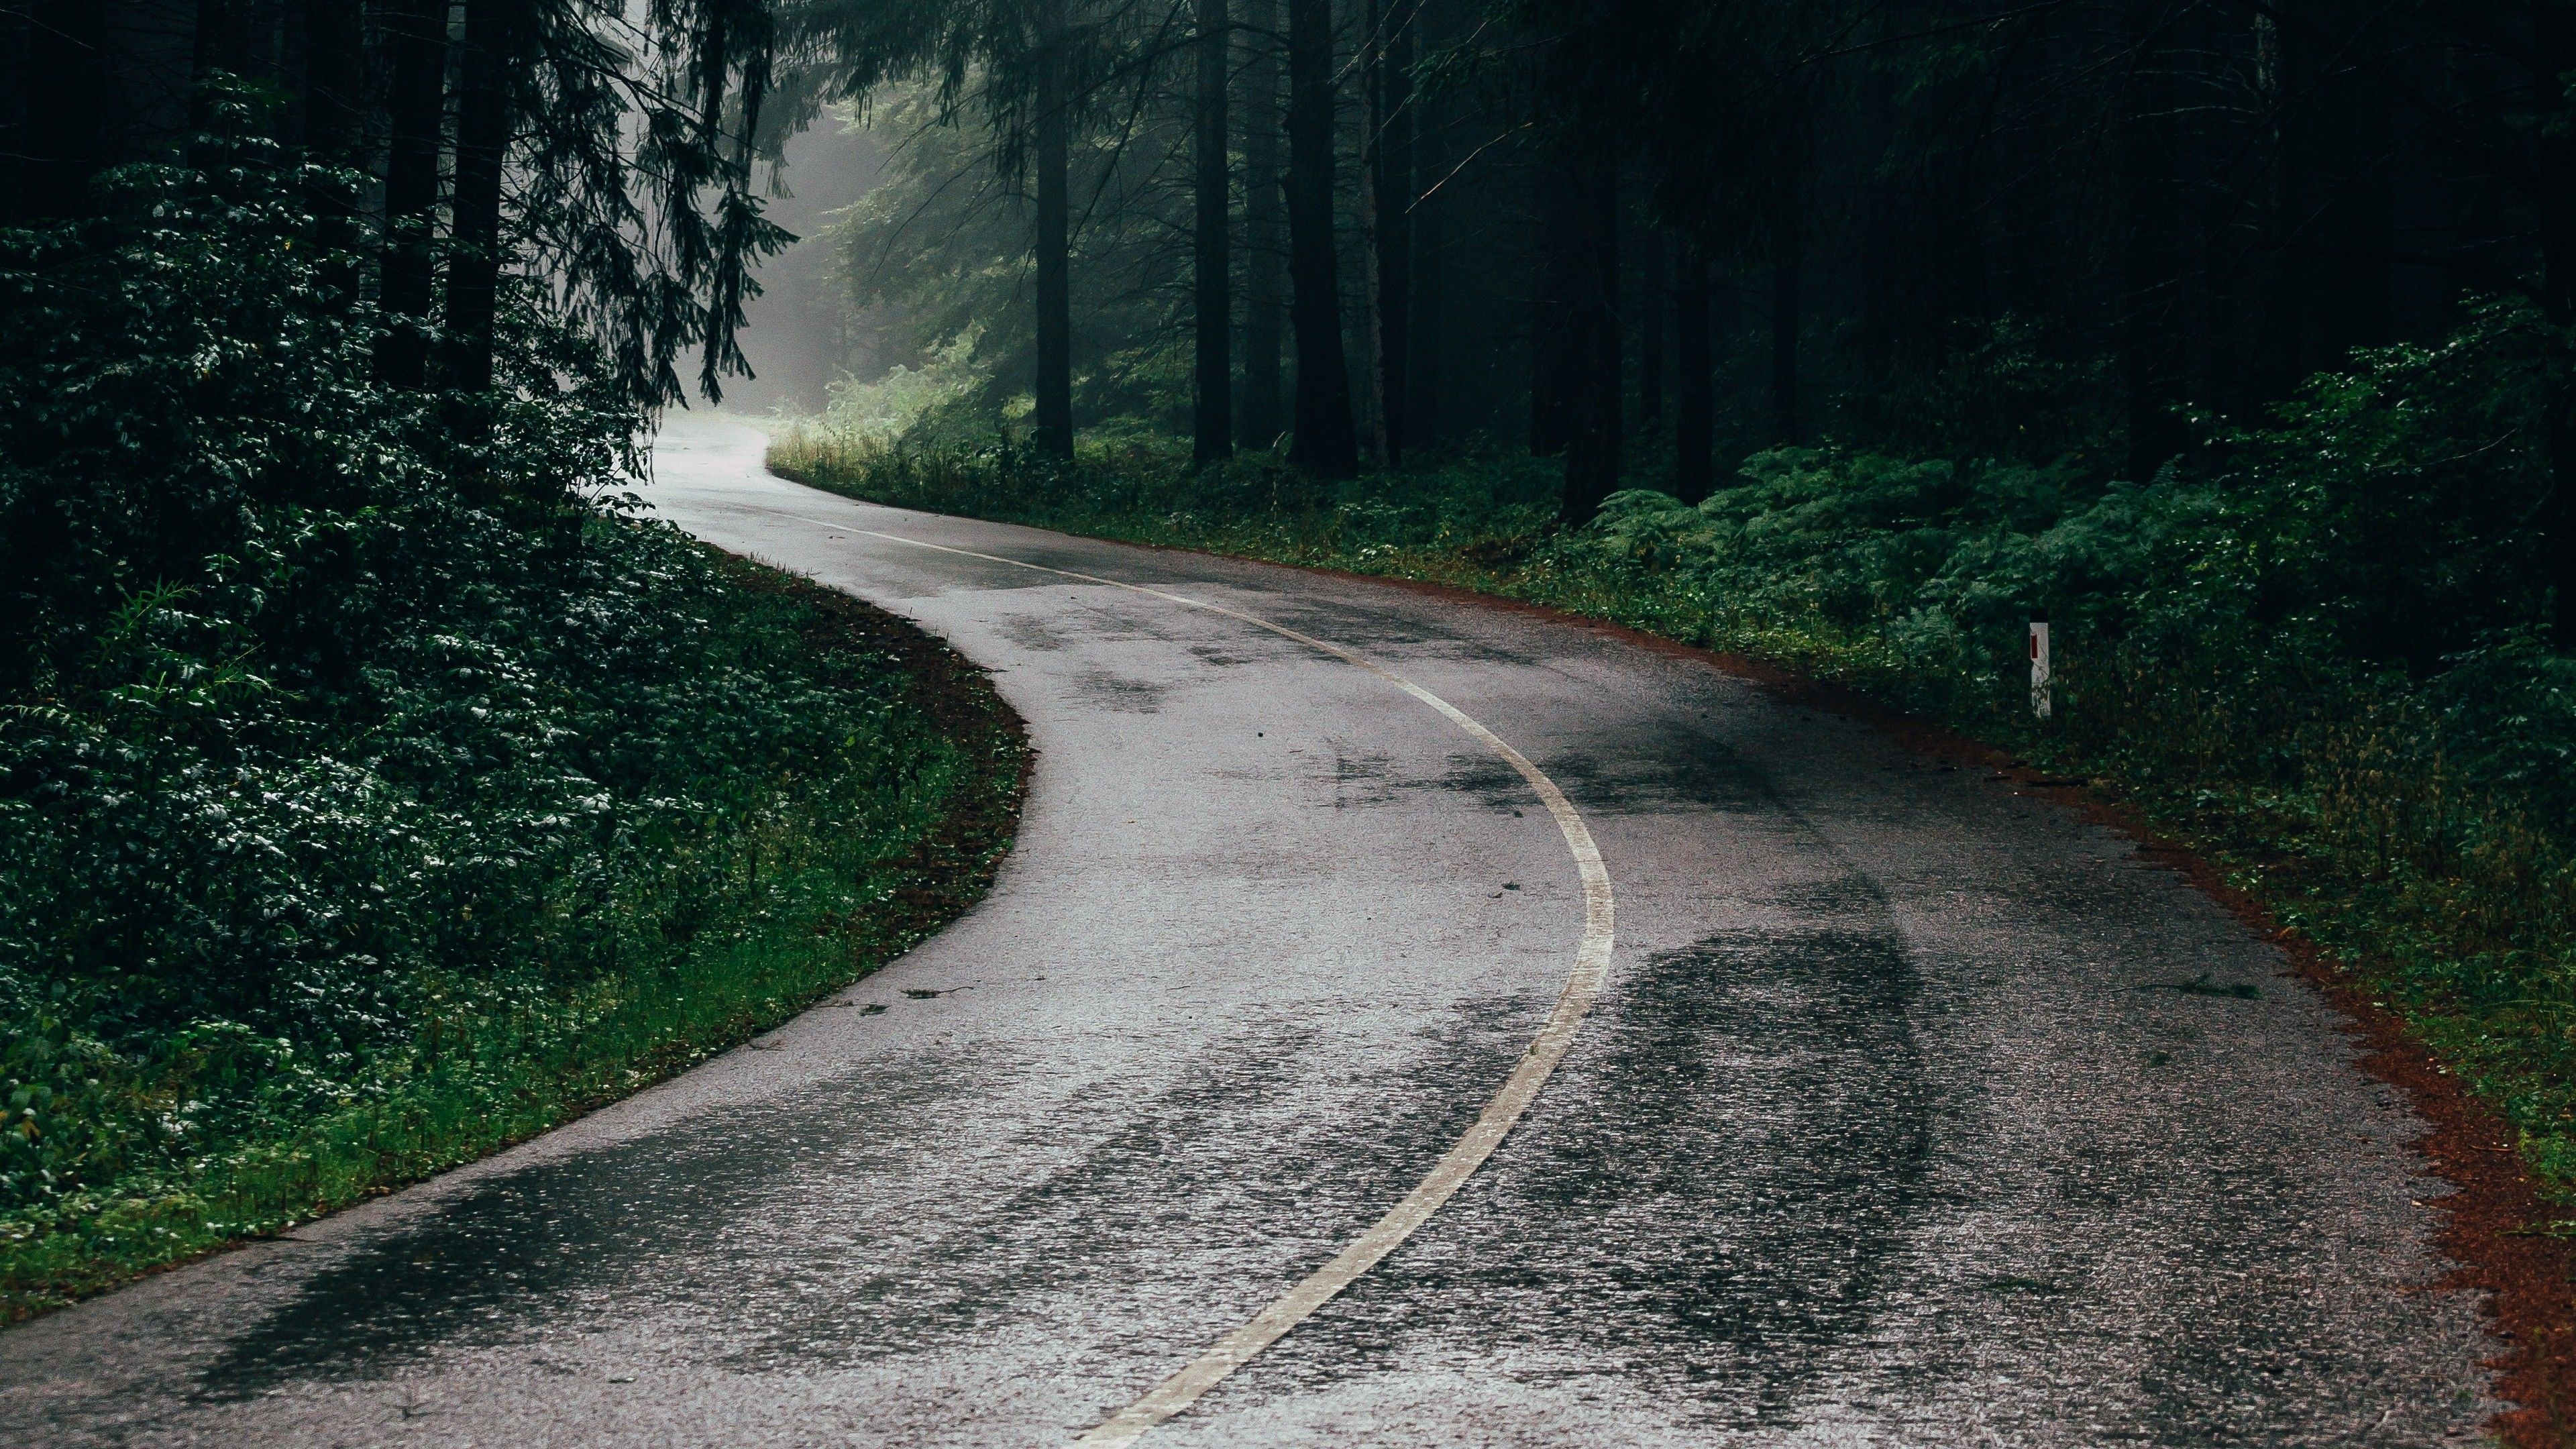 دانلود والپیپر جاده خیس بارانی در وسط جنگل سرسبز و زیبا